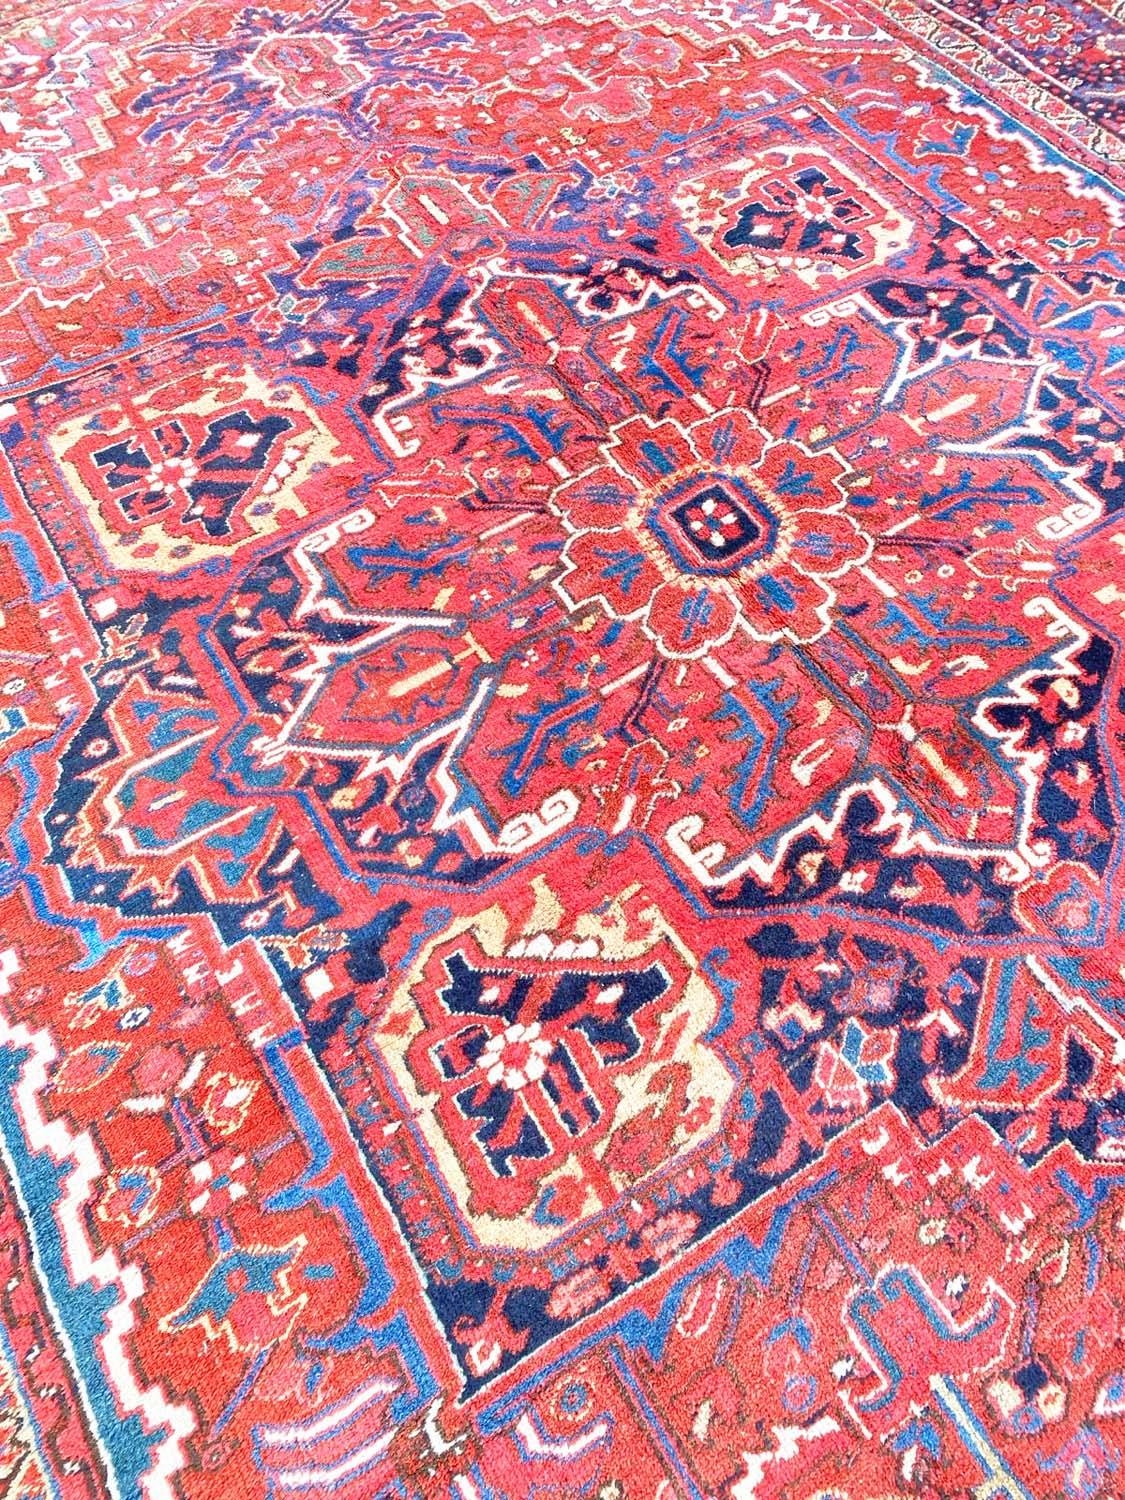 ANTIQUE PERSIAN HERIZ CARPET, 410cm x 299cm. - Image 3 of 7